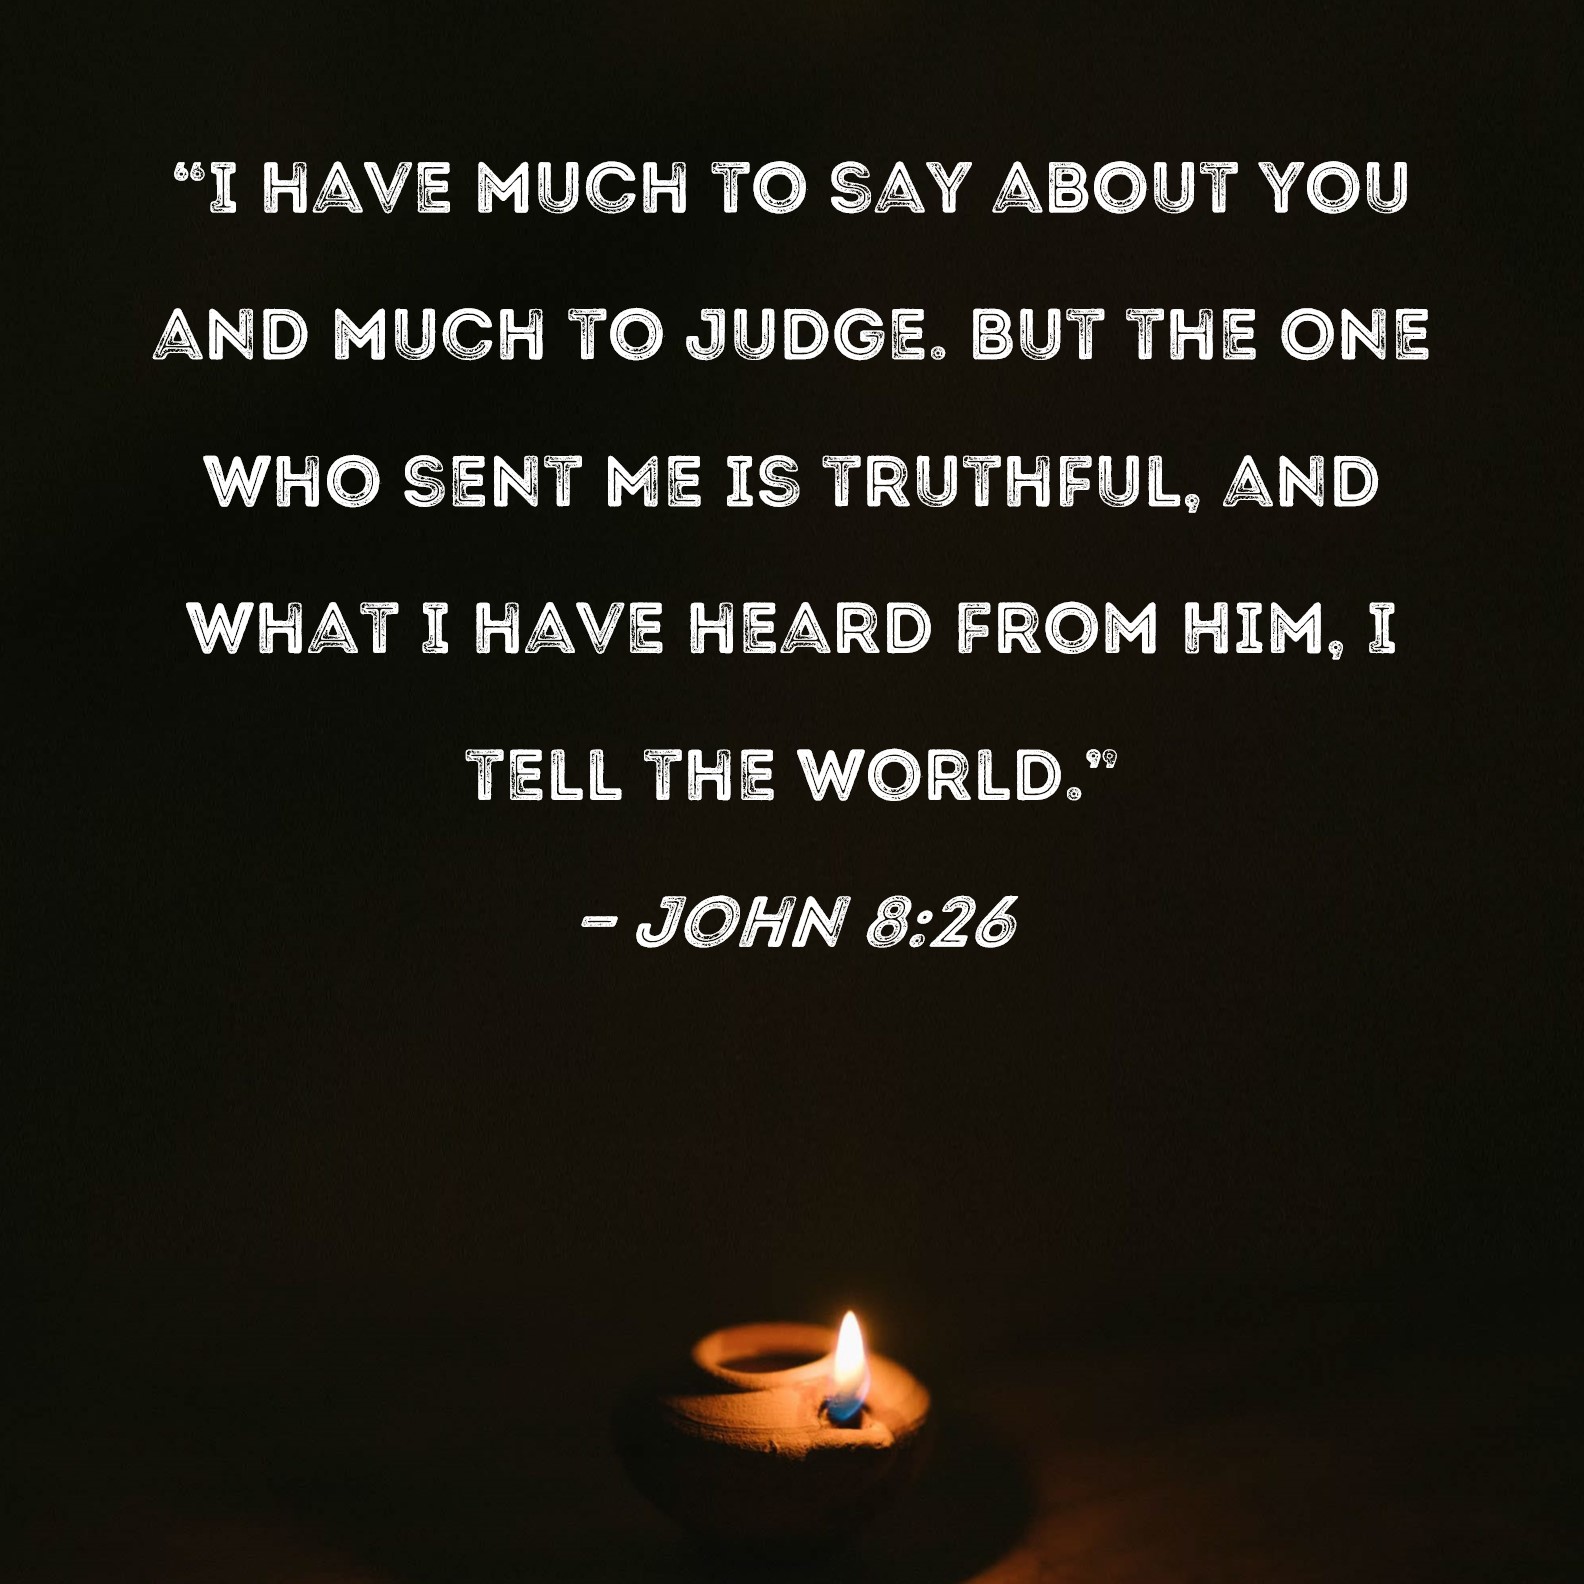 John 8:26 